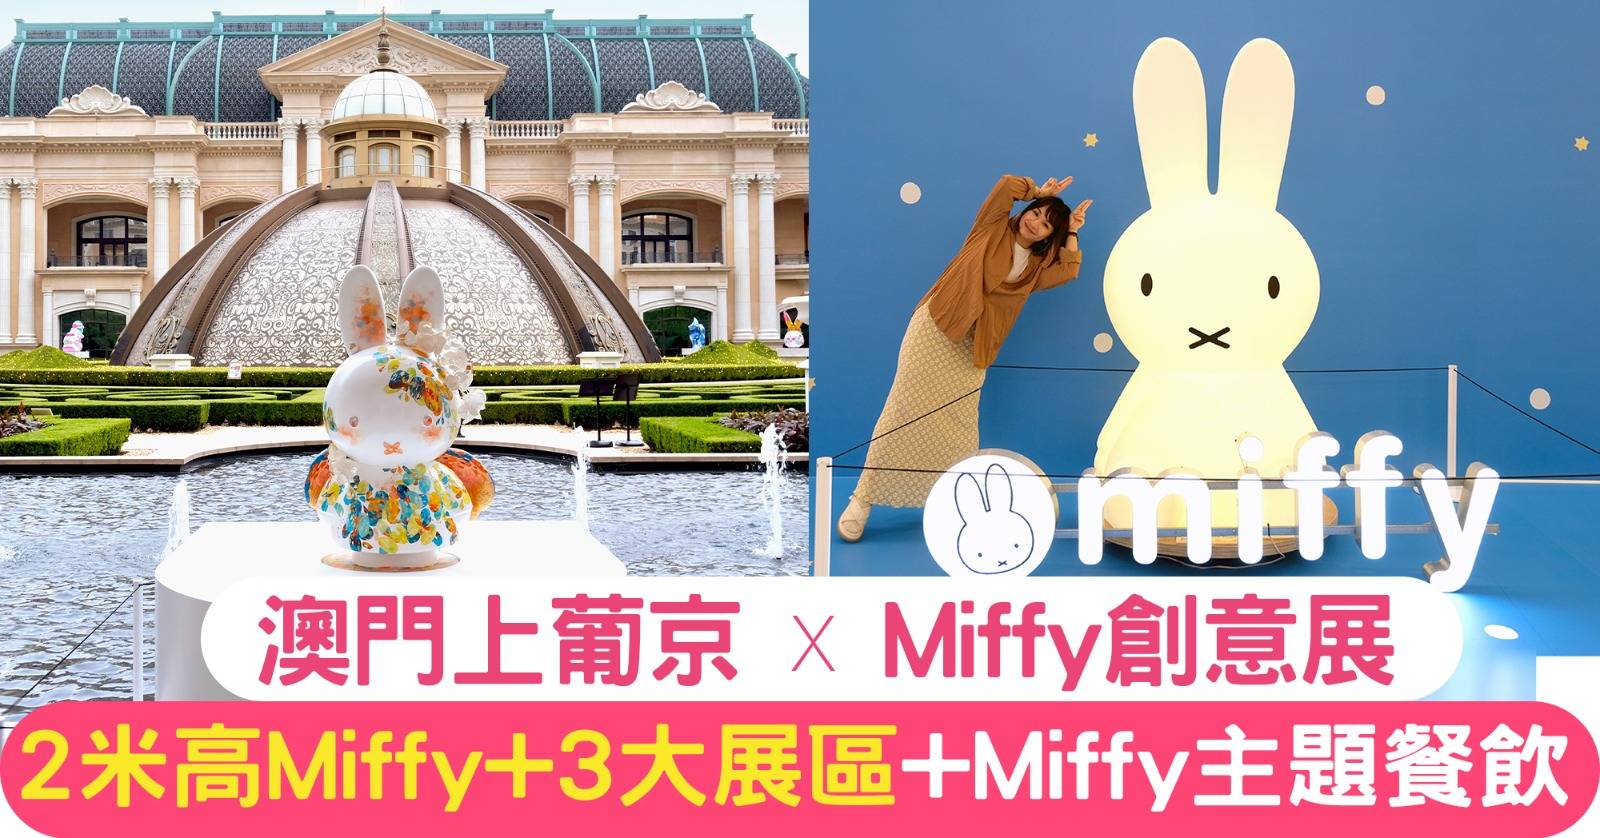 Miffy 創意展